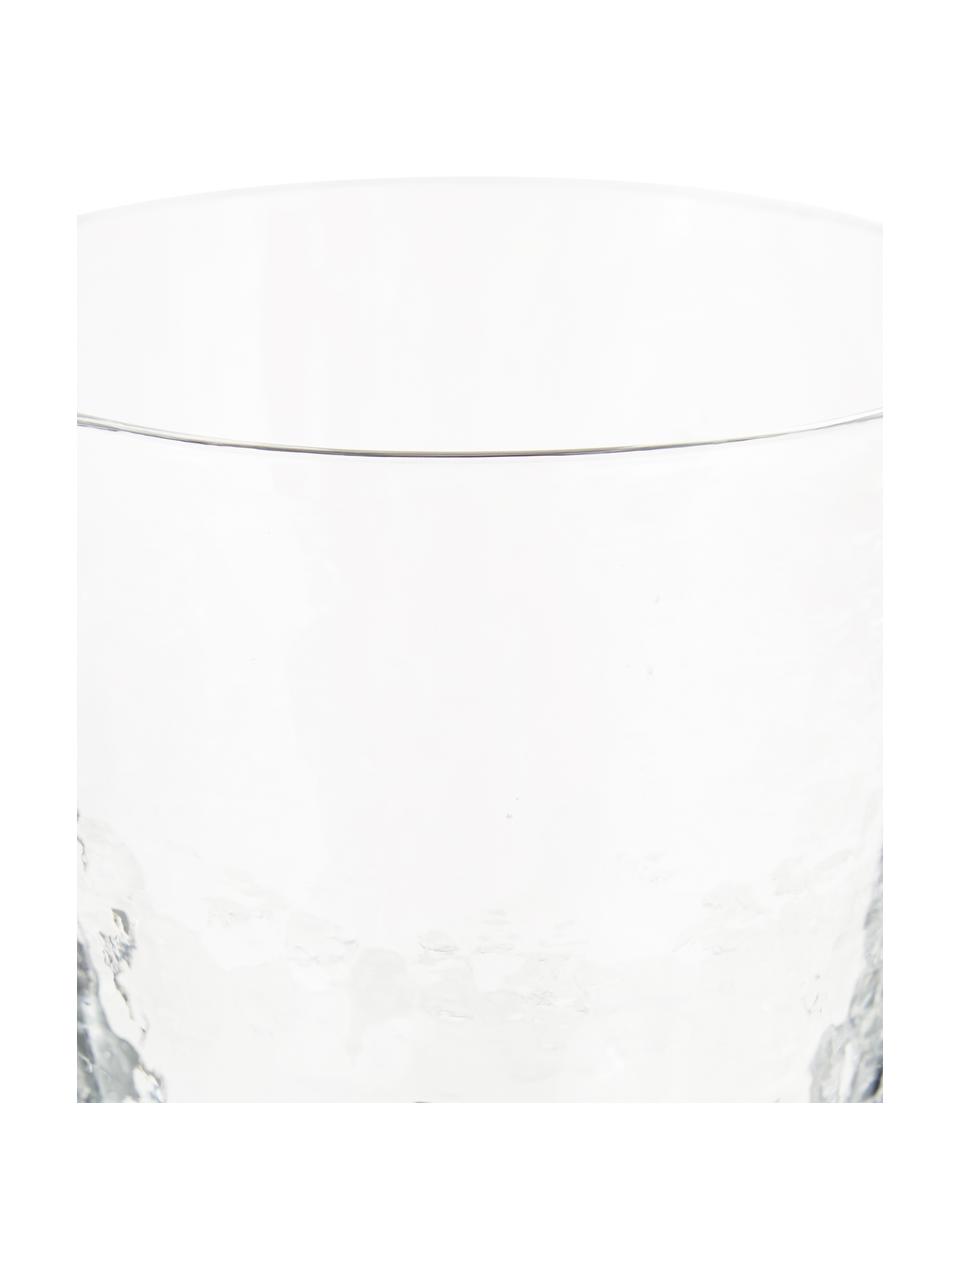 Mondgeblazen waterglazen Hammered, 4 stuks, Mondgeblazen glas, Transparant, Ø 9 x H 10 cm, 250 ml